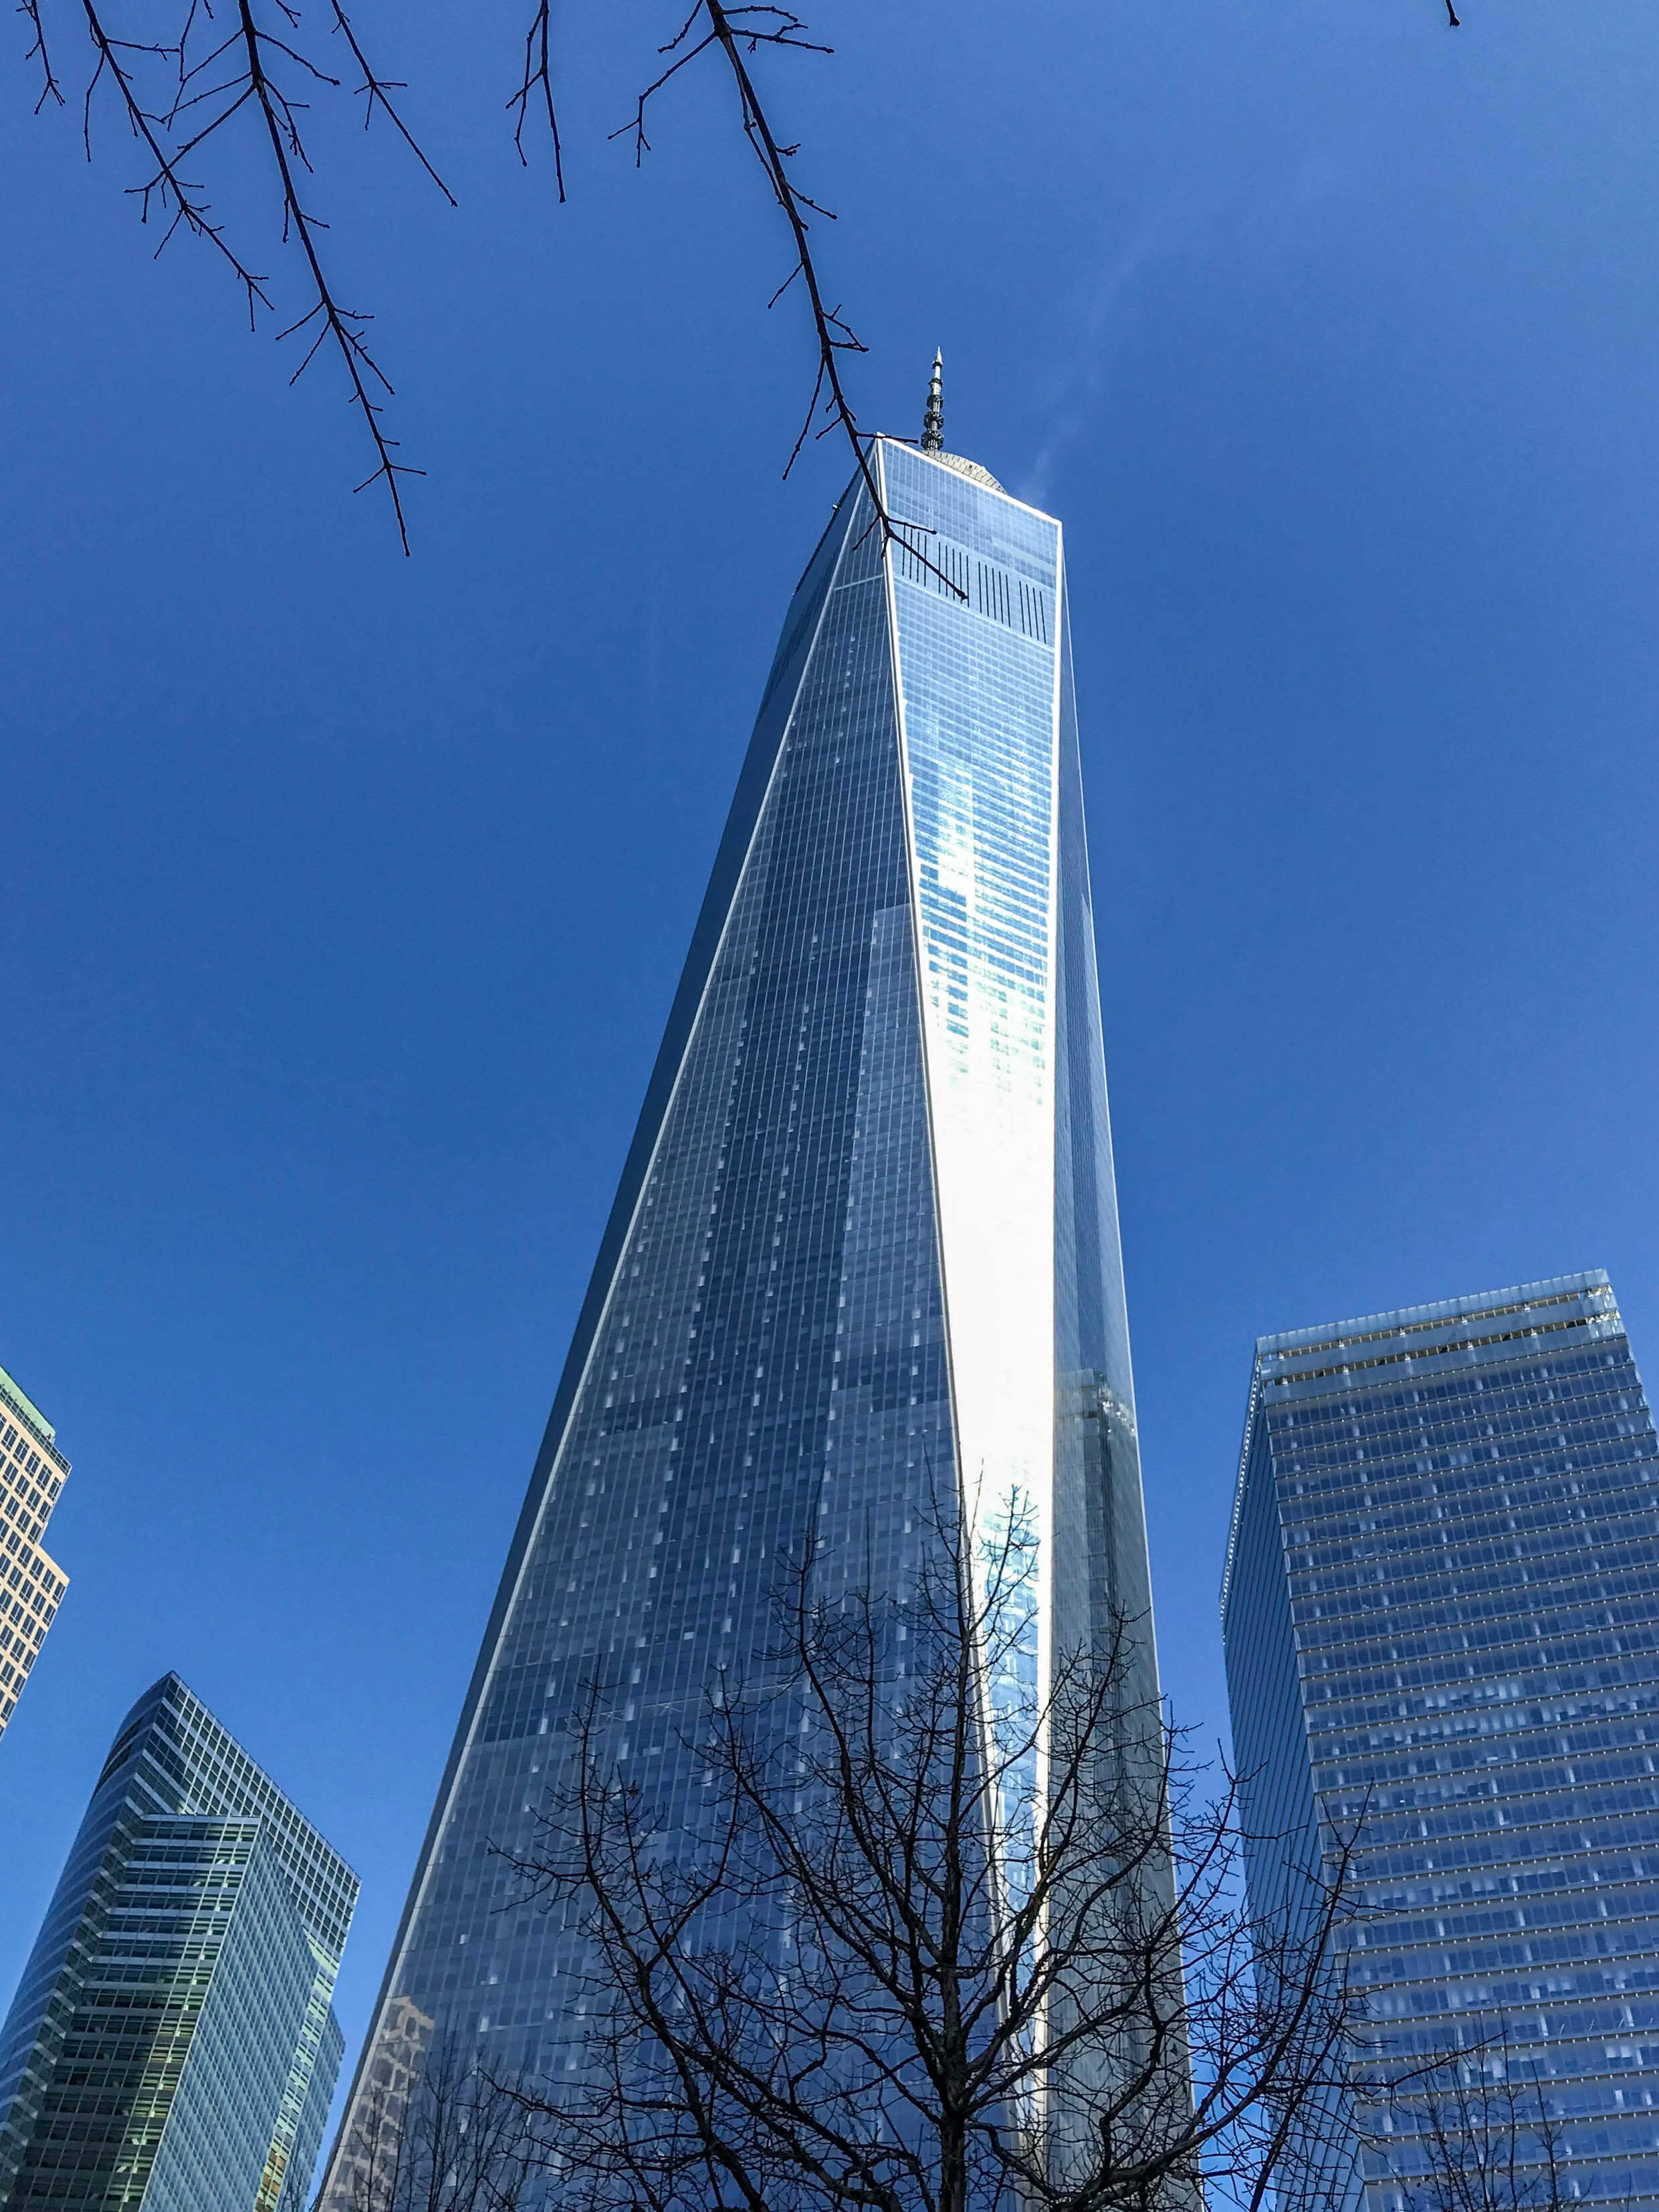 NYC 9/11 Memorial